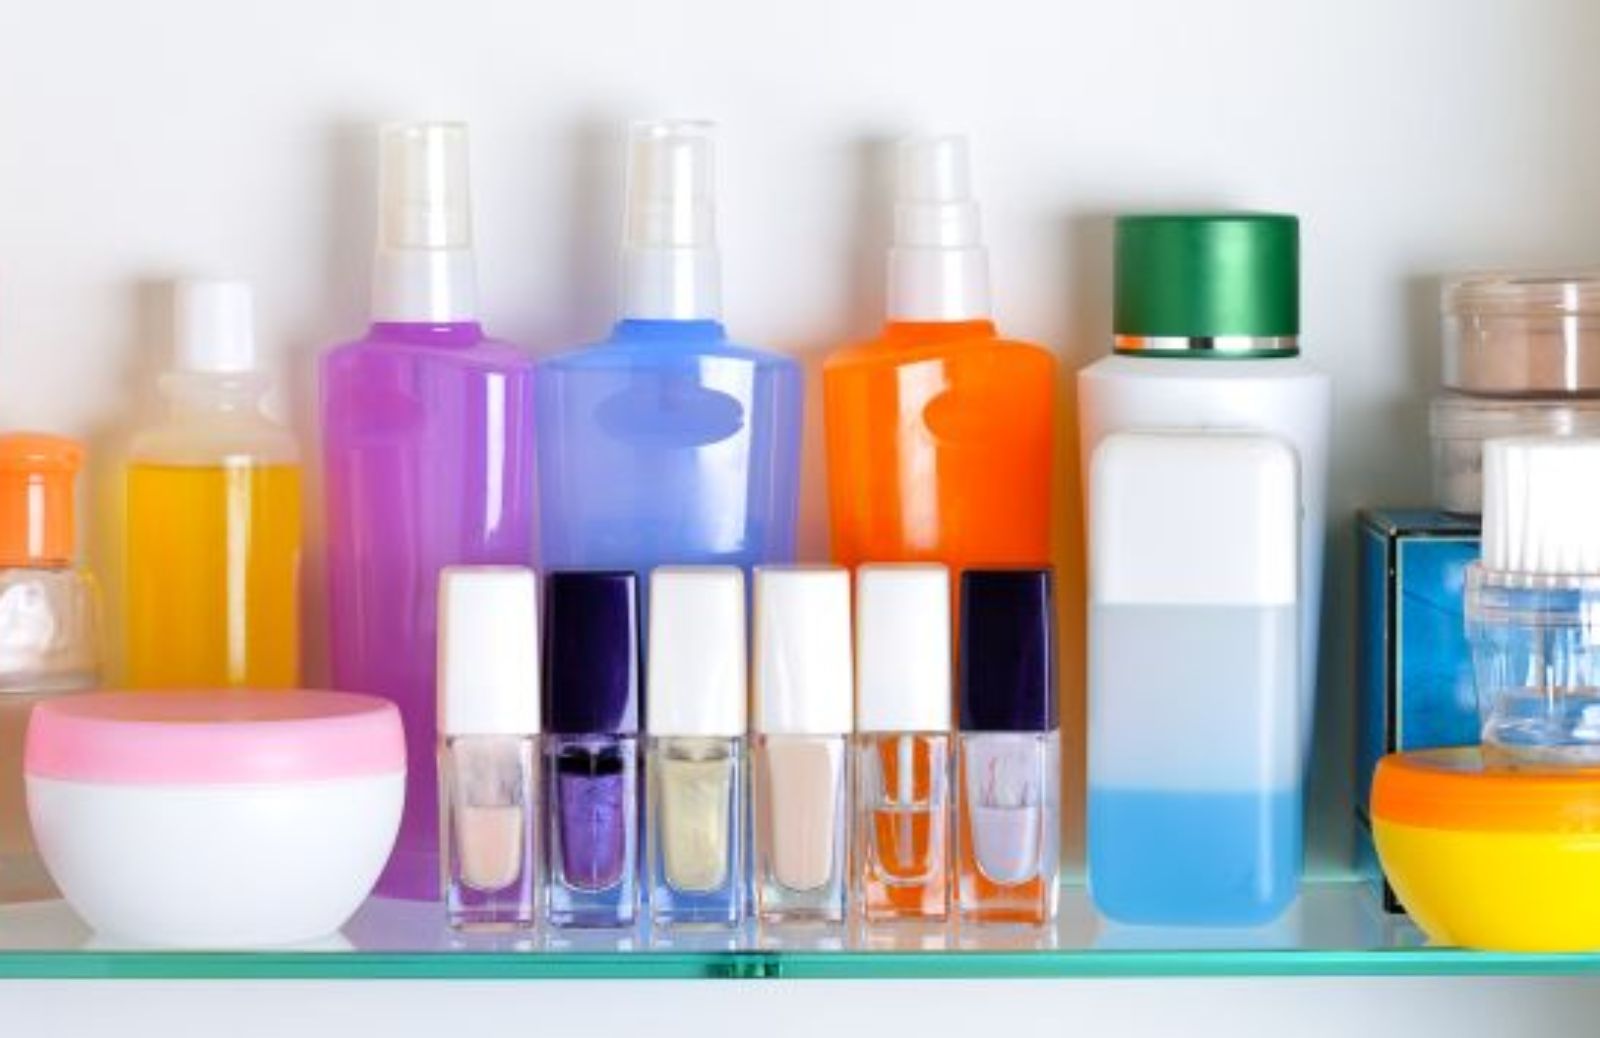 Come riconoscere i composti chimici da evitare nei cosmetici